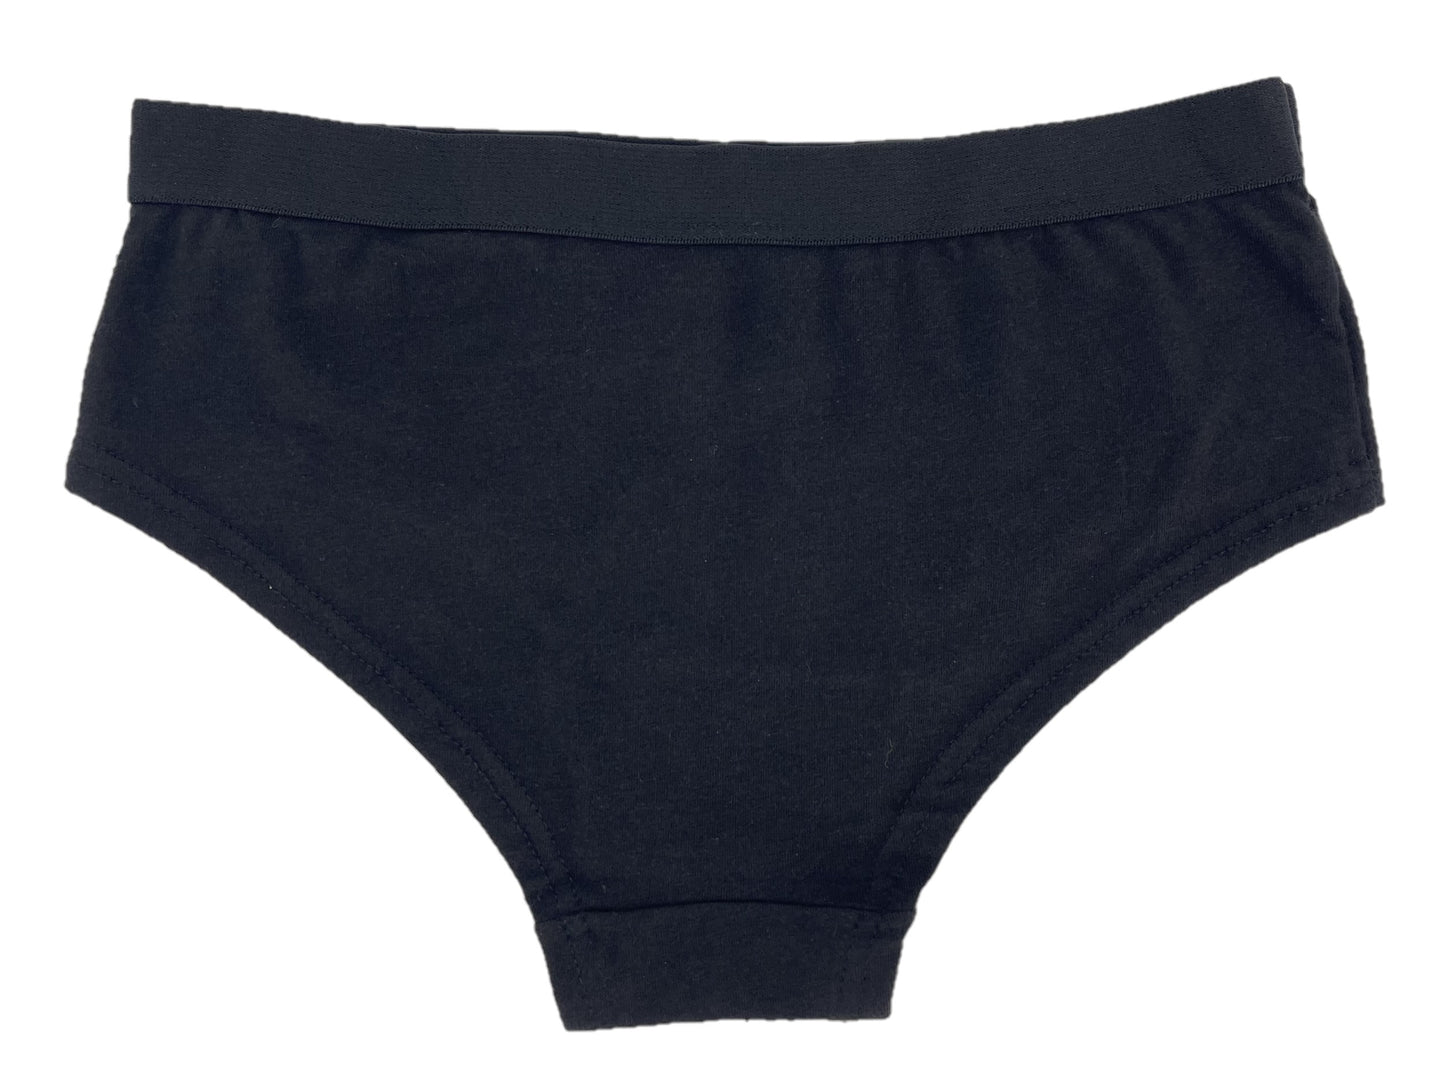 Girls 5 Pack Black Stretch Cotton Knickers Shorts Style Briefs Underwear